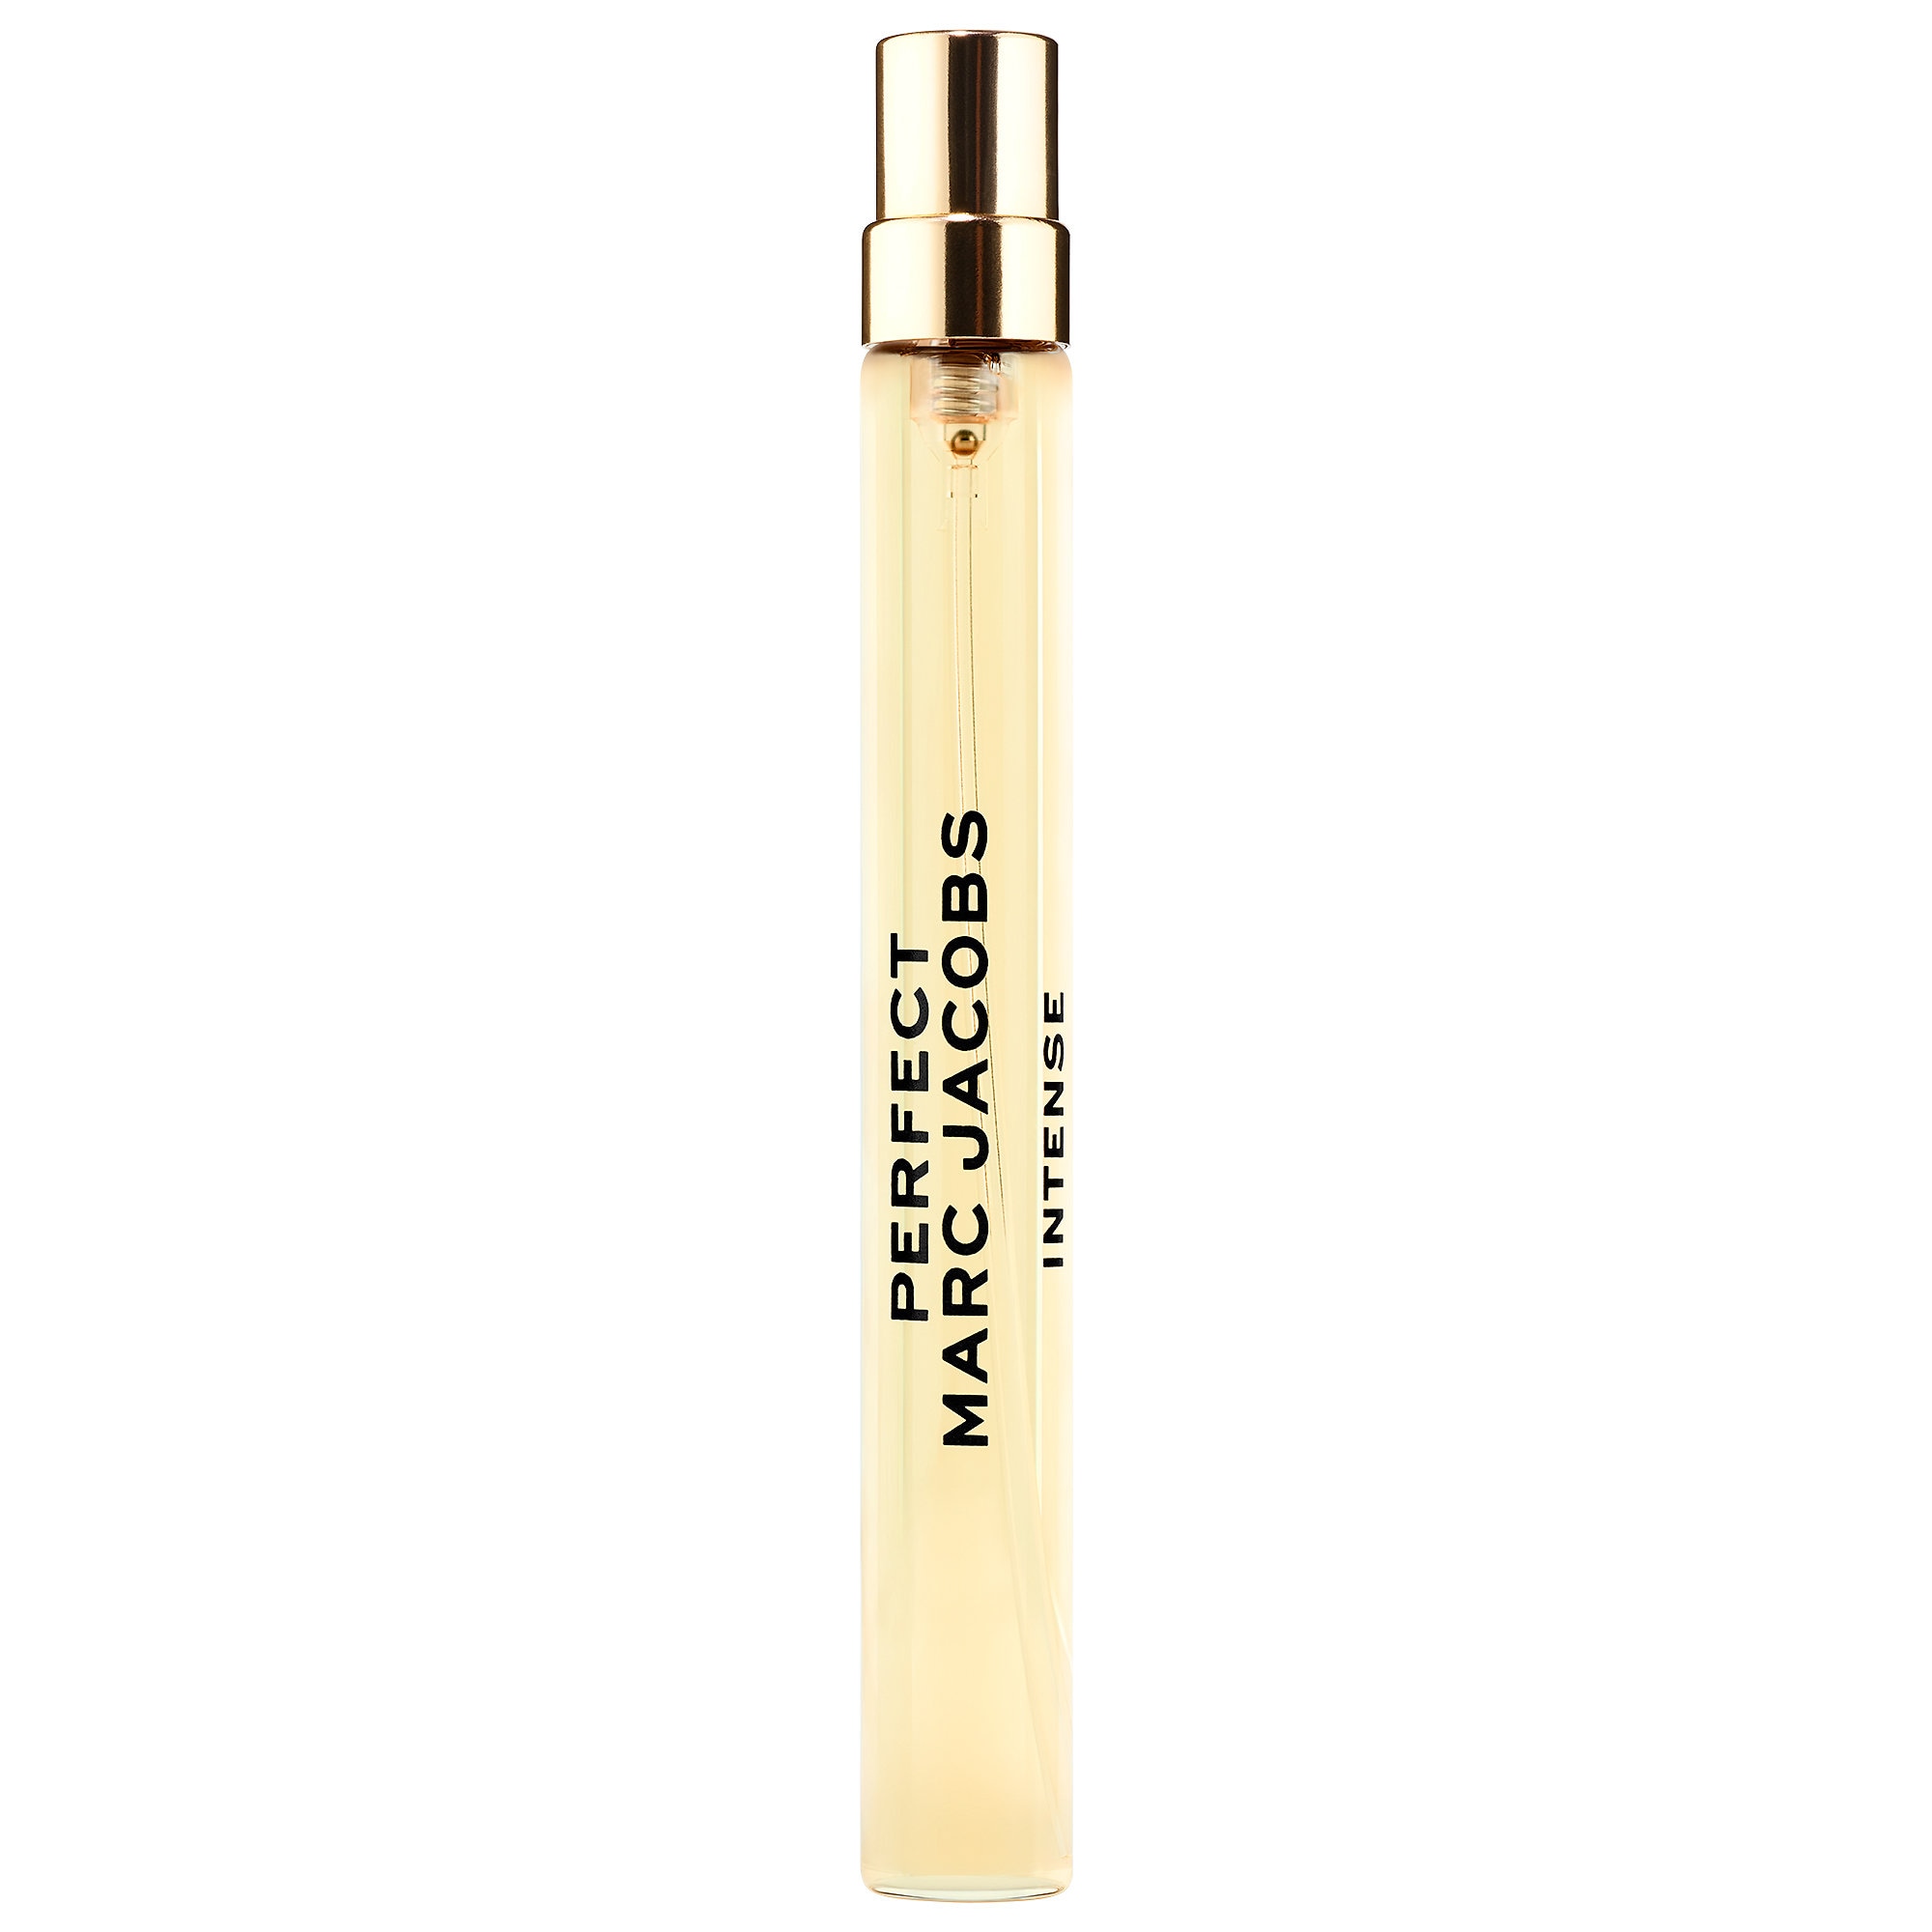 Perfect Intense Eau de Parfum Travel Spray Marc Jacobs Fragrances